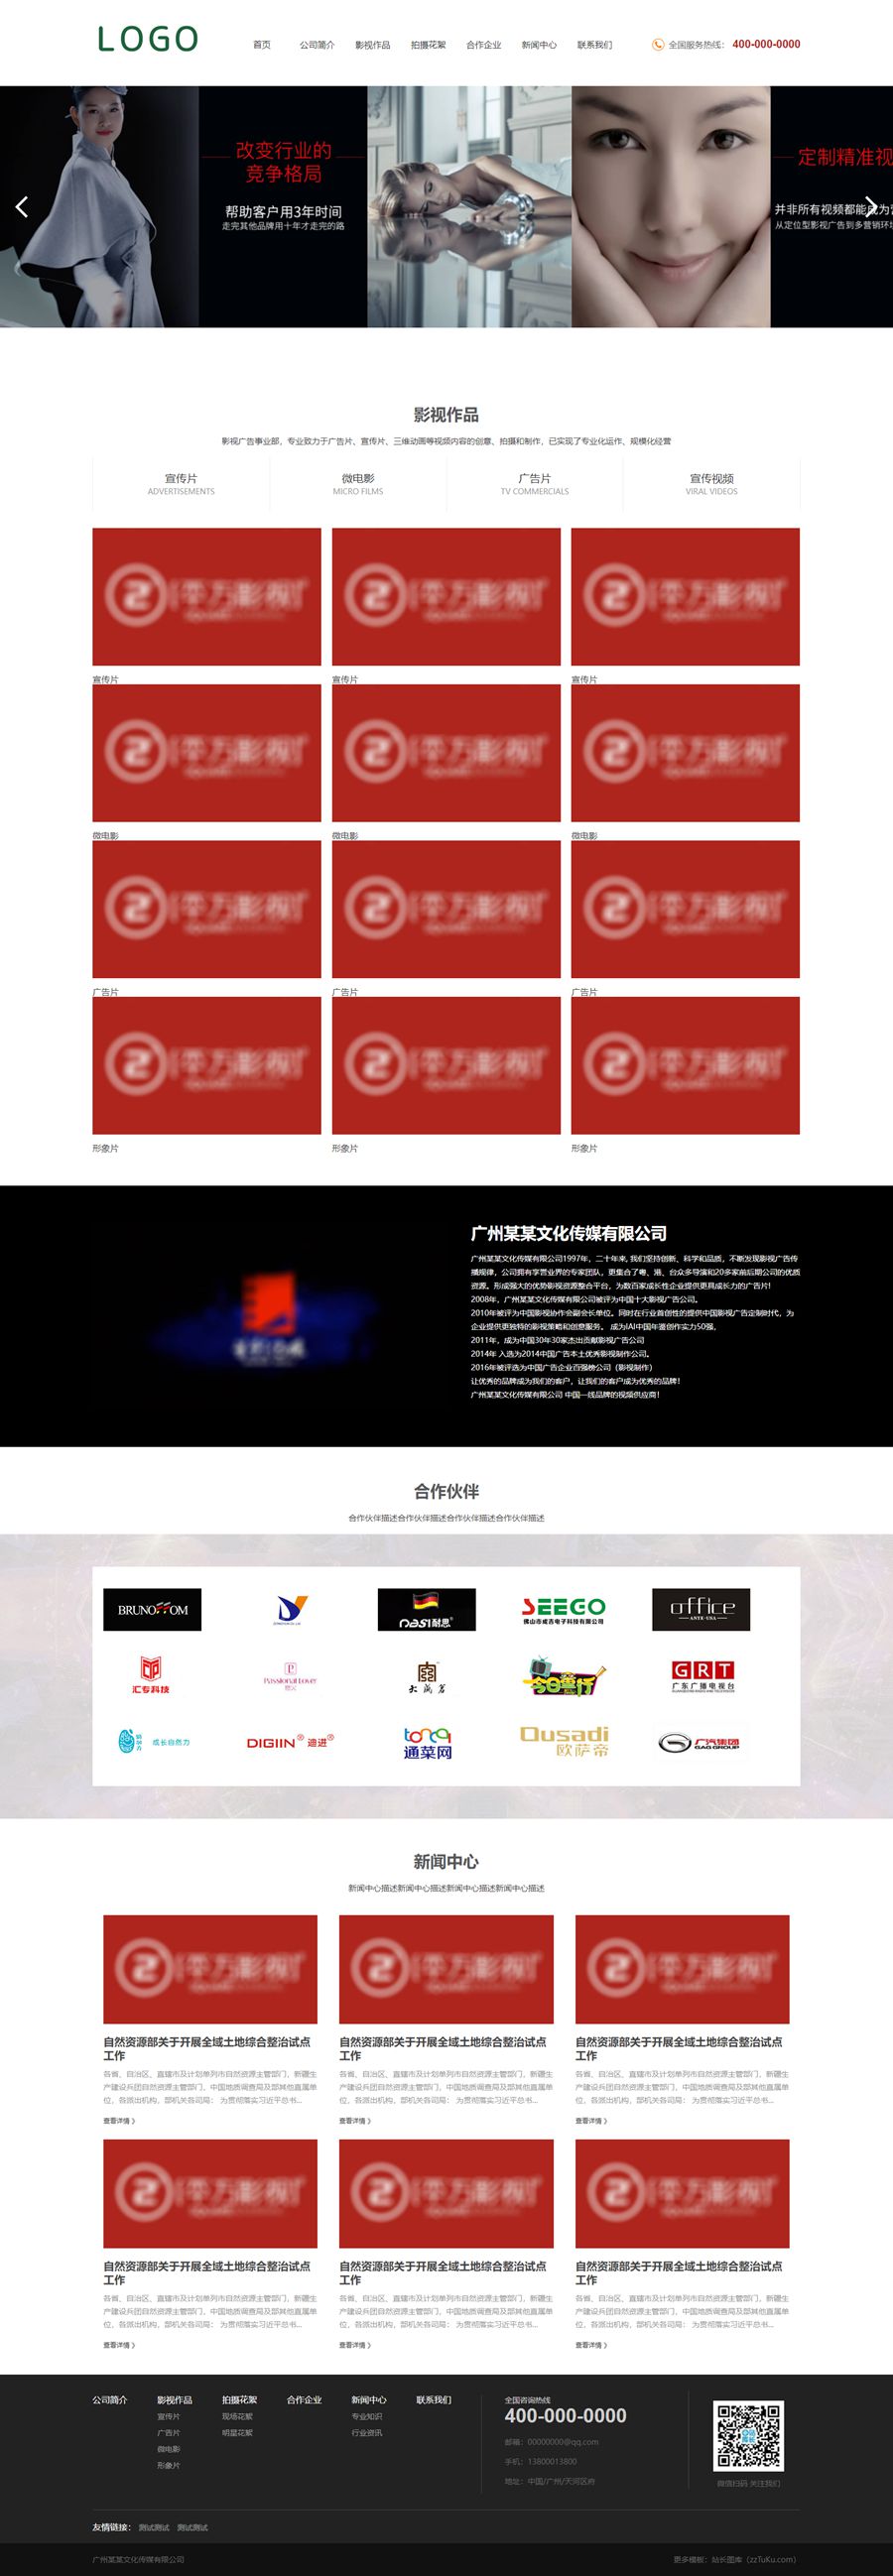 短视频影视广告企业静态HTML网站模板